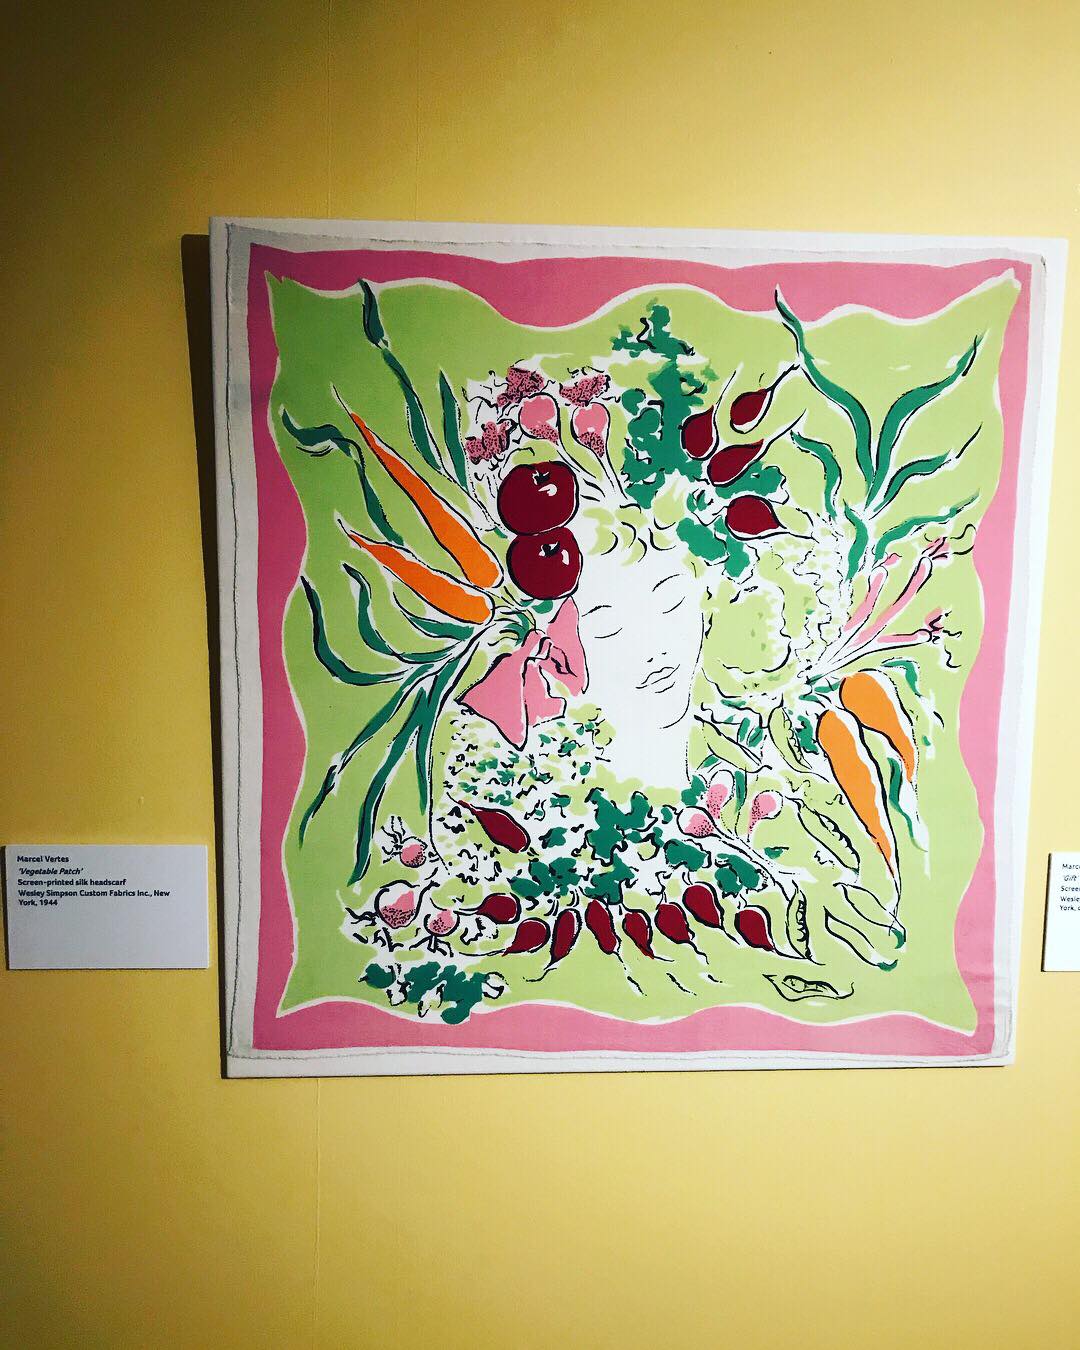 Marcel Vertès silk screen-printed ‘Vegetable Patch’ silk scarf,1944